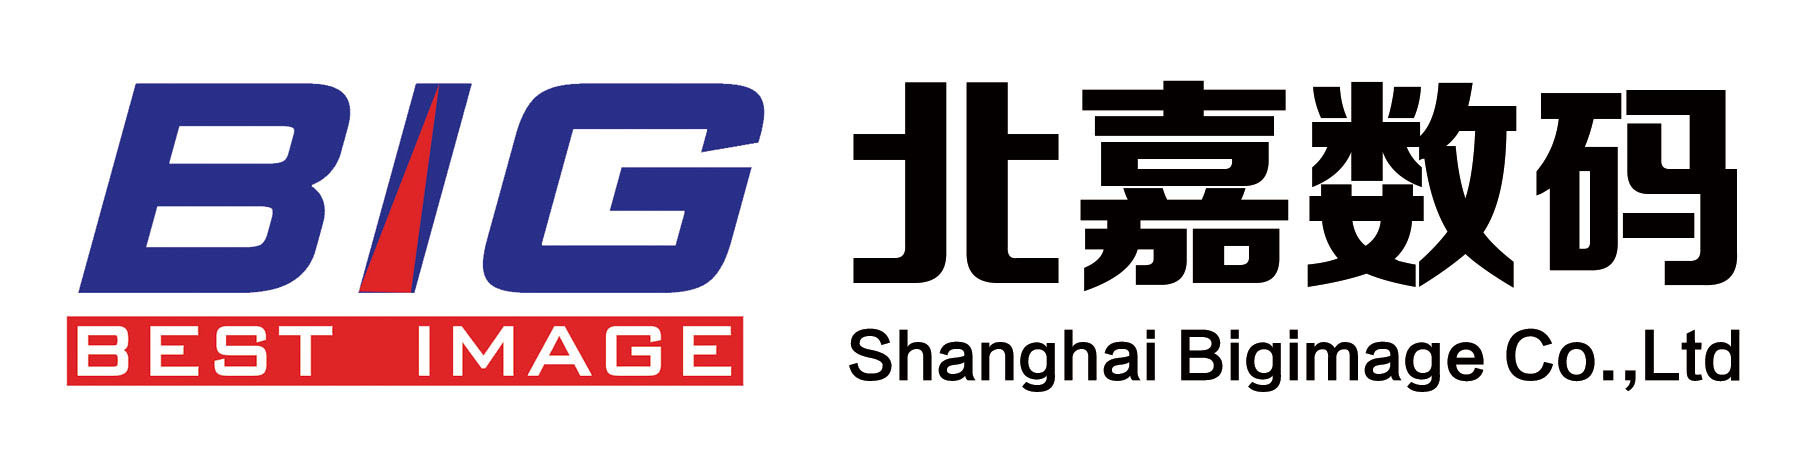 上海北嘉数码影像科技股份有限公司